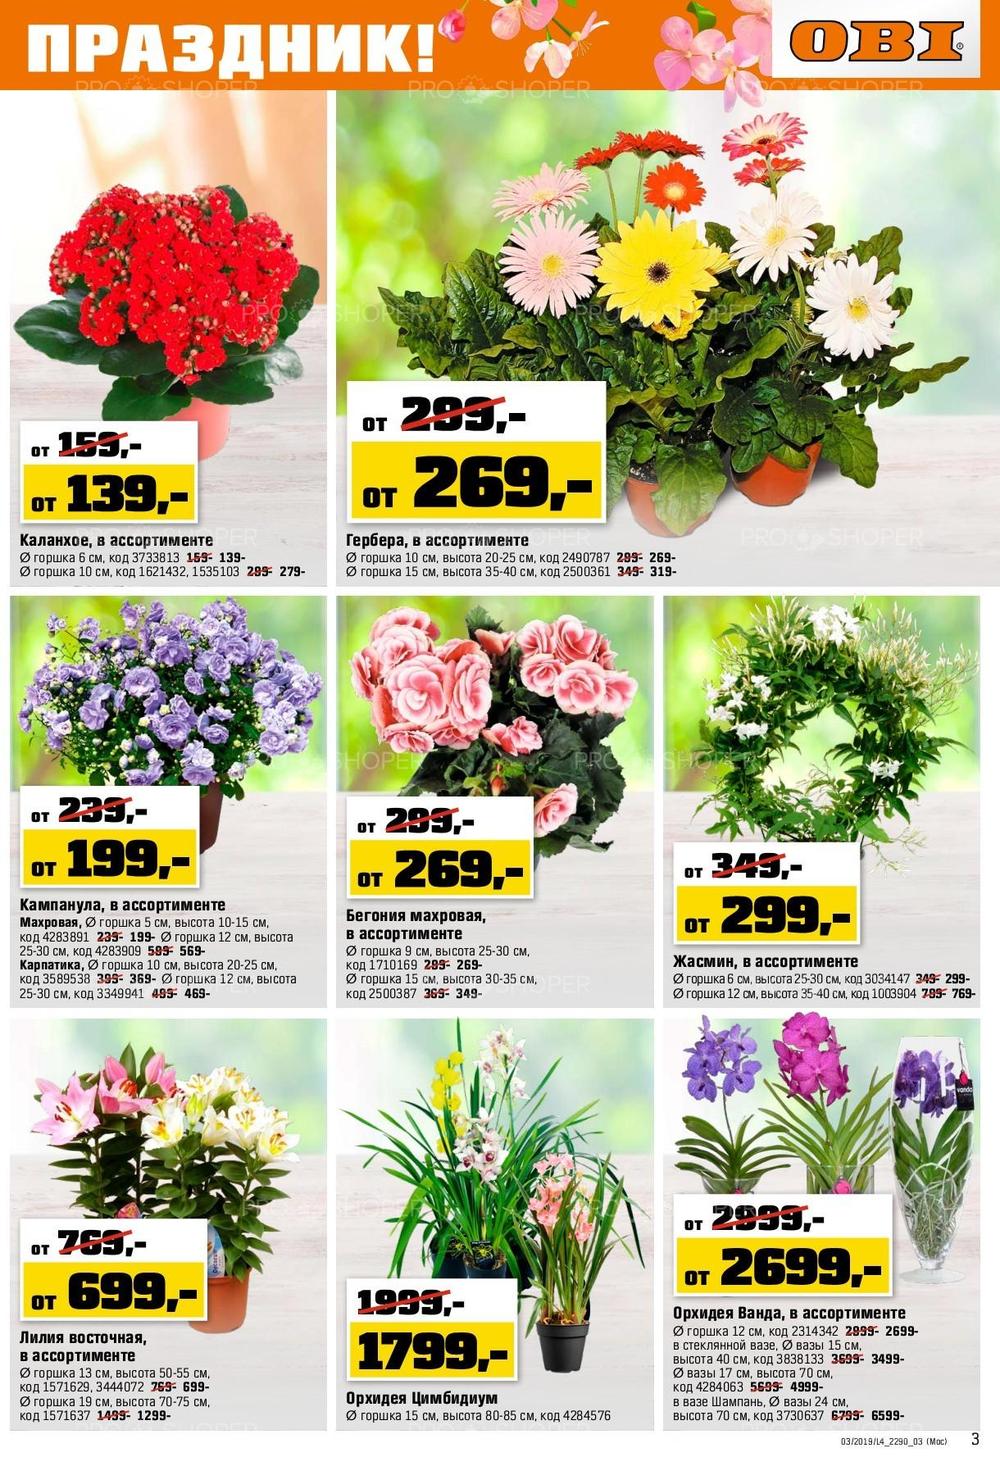 Цены Цветов В Горшках В Оби